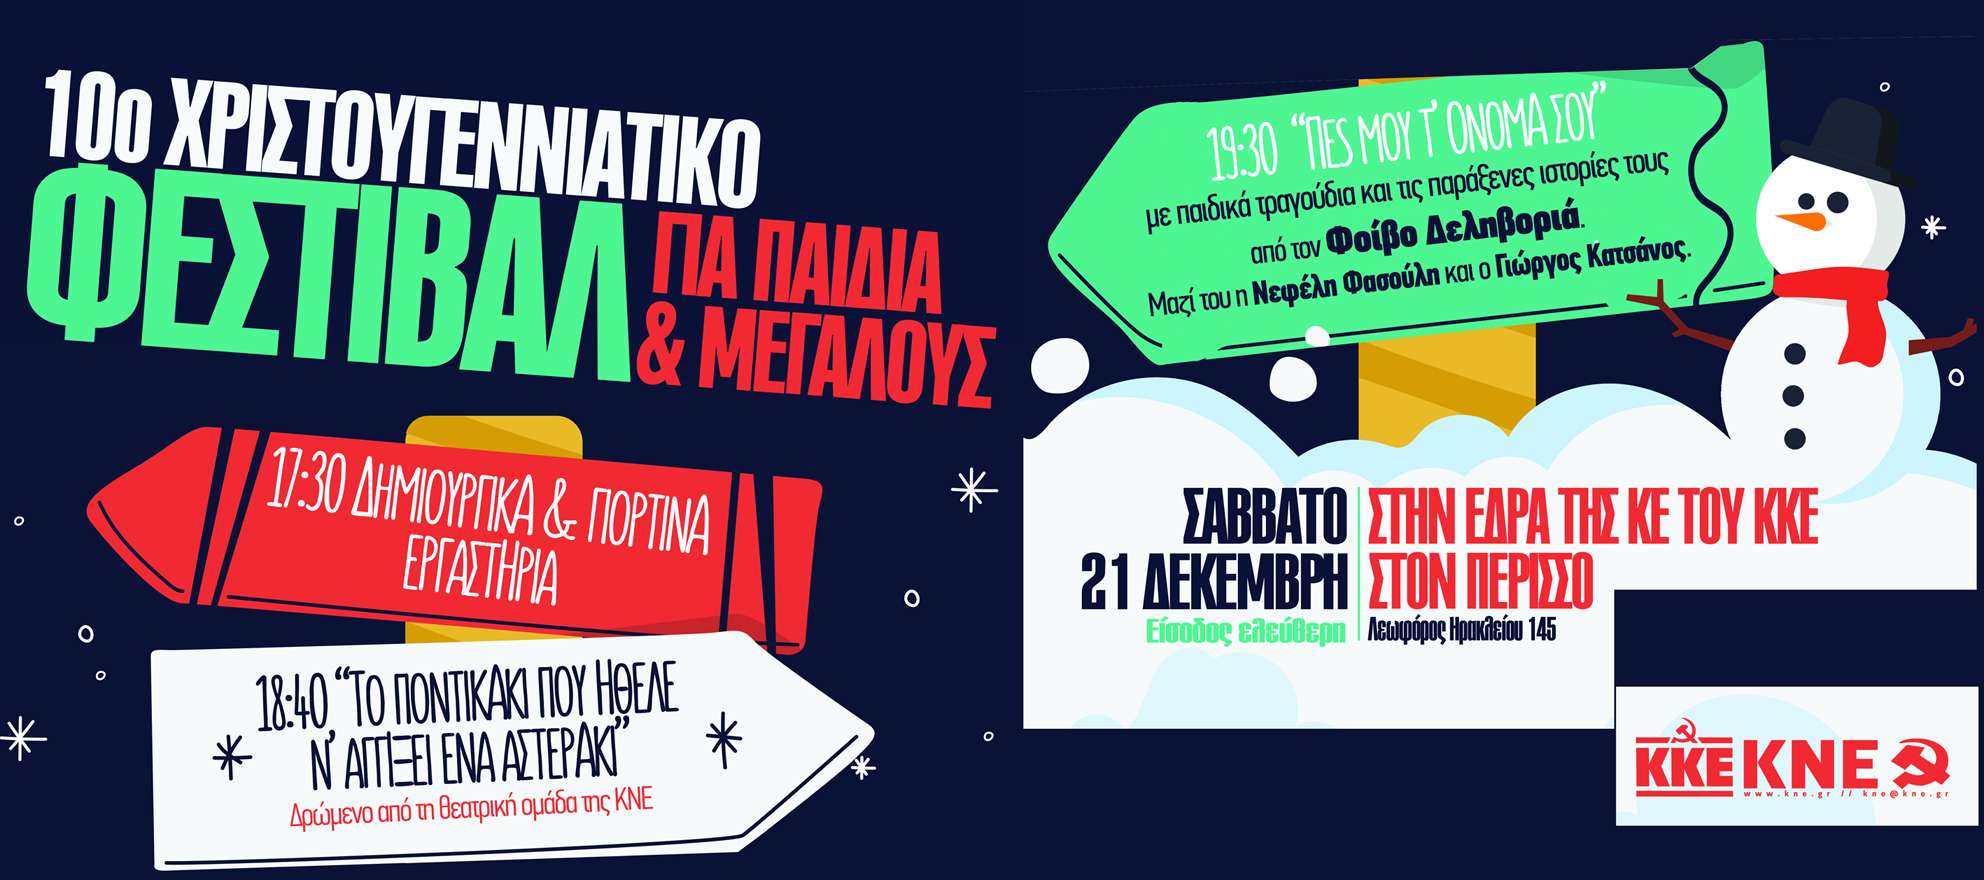 ΚΚΕ ΚΝΕ 21 Δεκέμβρη 2019 οι γιορτές για τα παιδιά σε Αθήνα και Θεσσαλονίκη